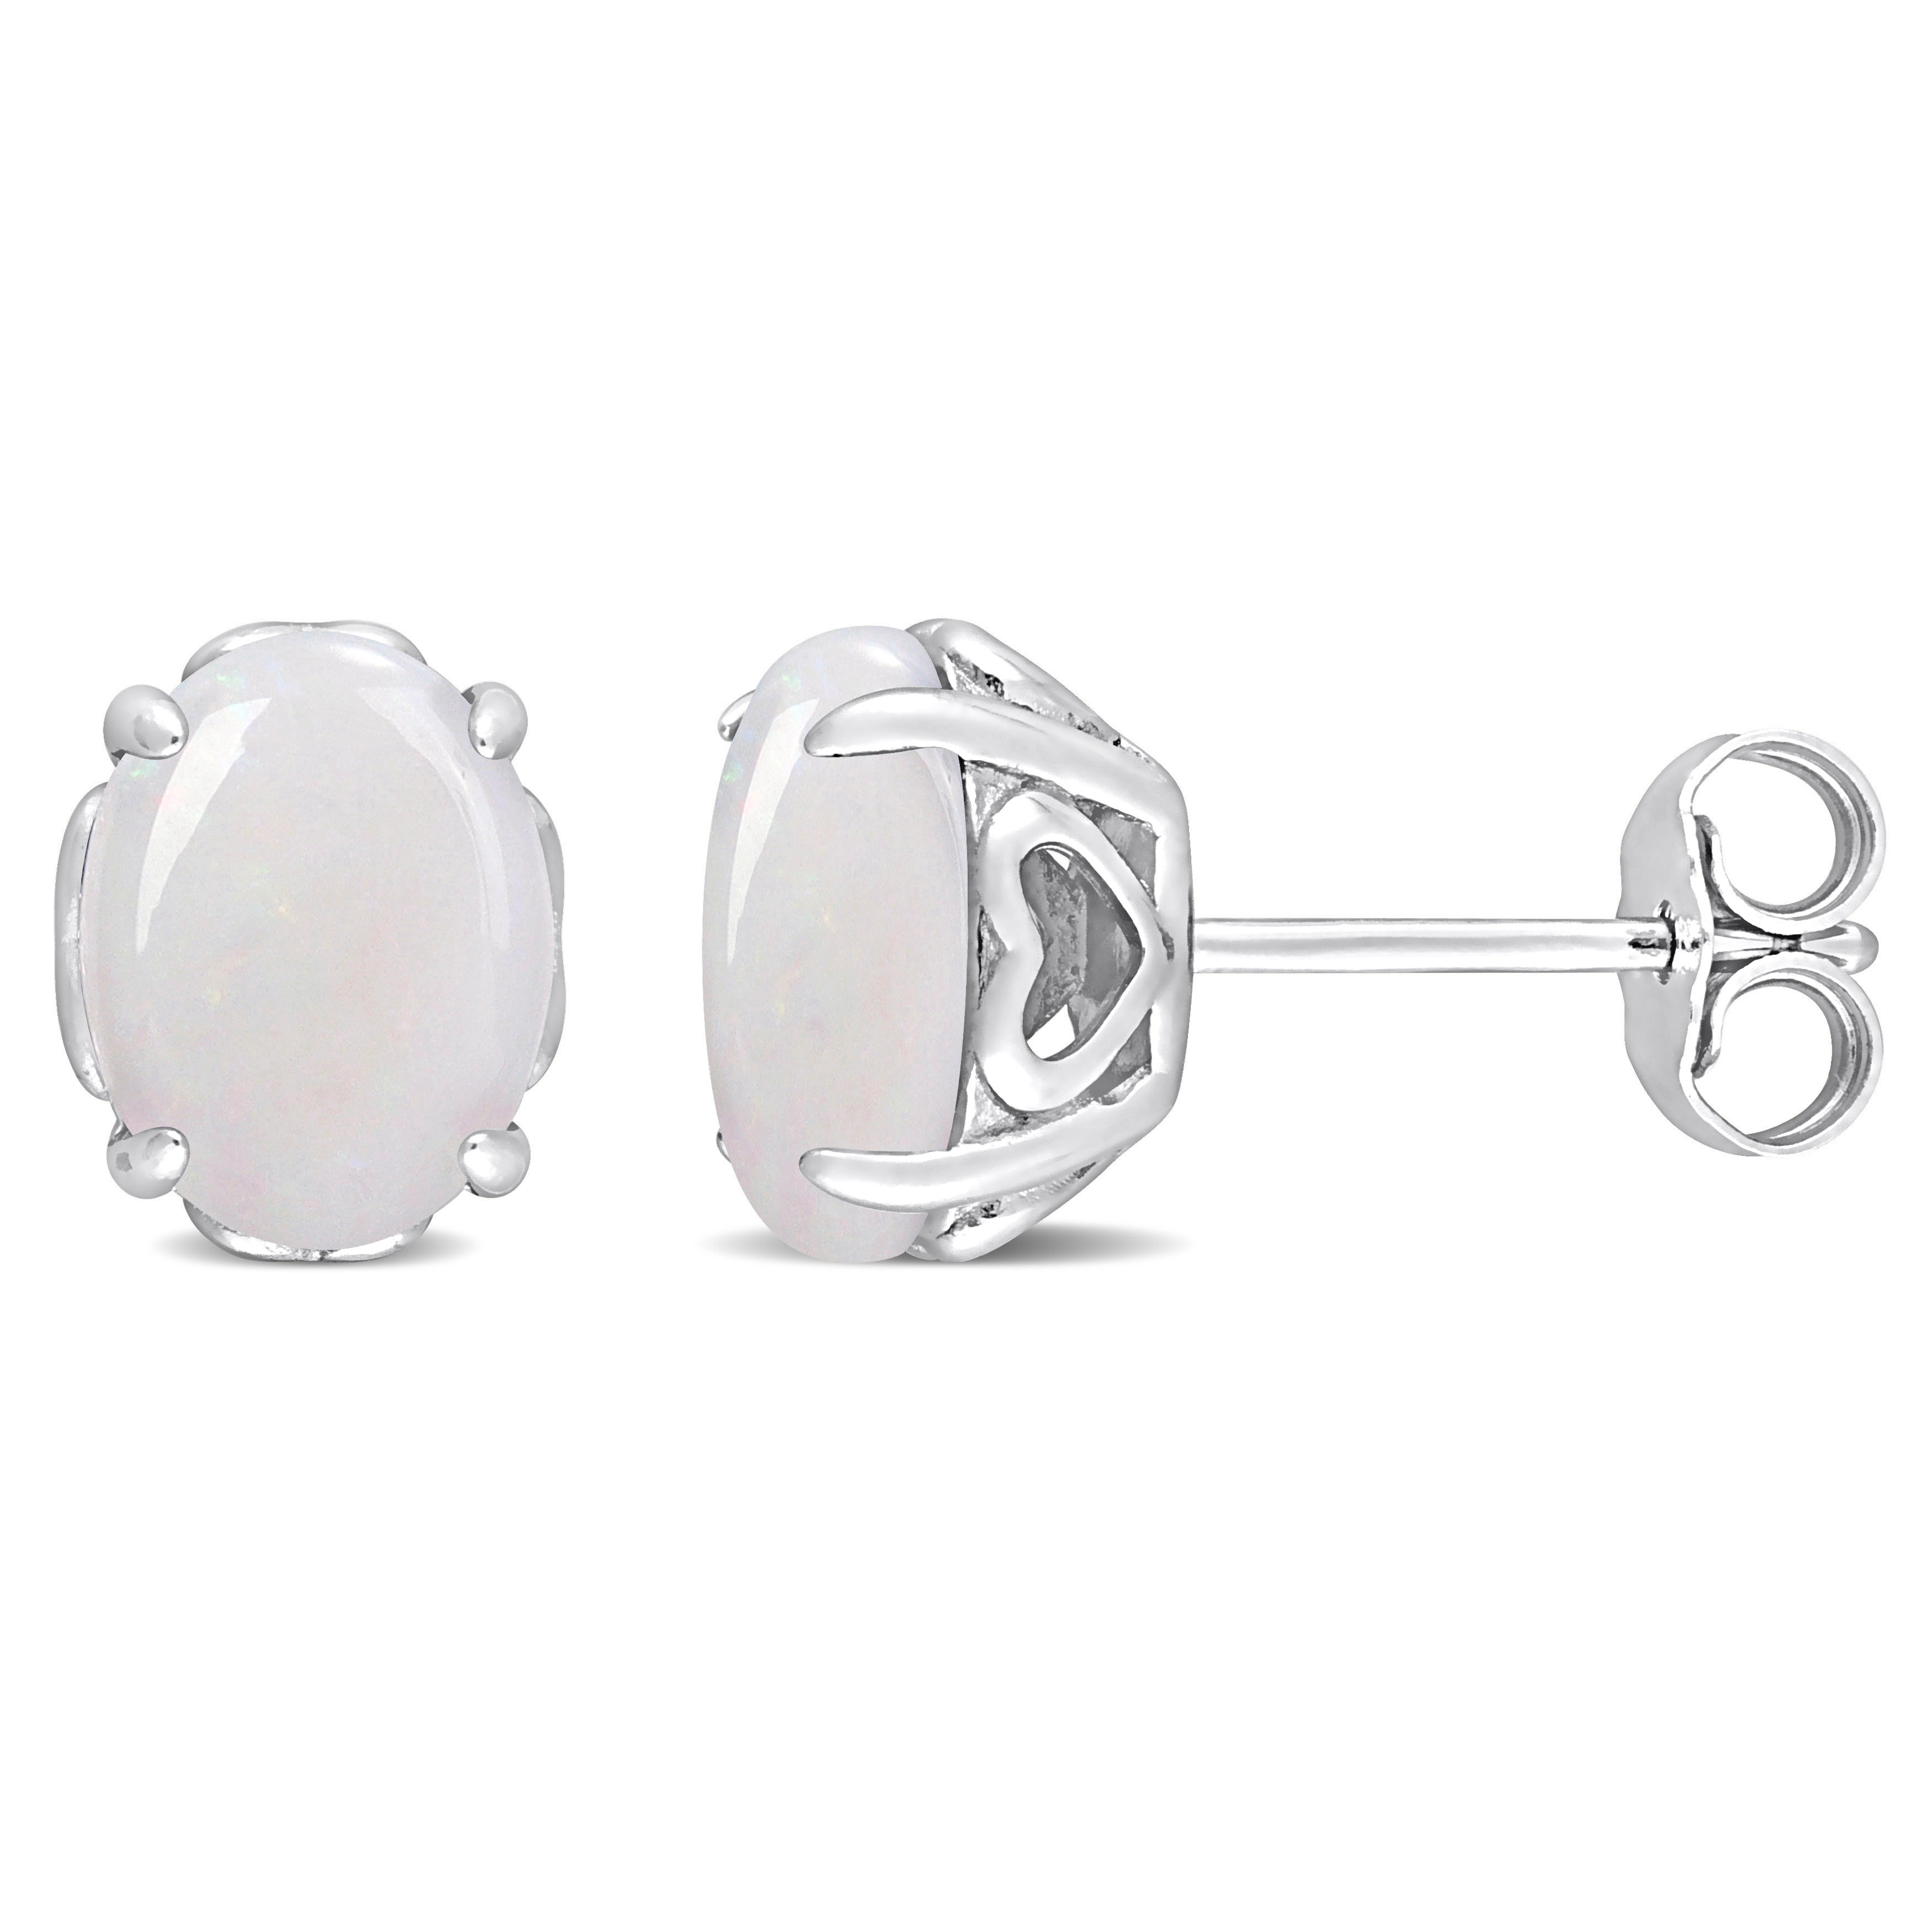 2 CT TGW Oval Opal Stud Earrings with Heart Design in Sterling Silver